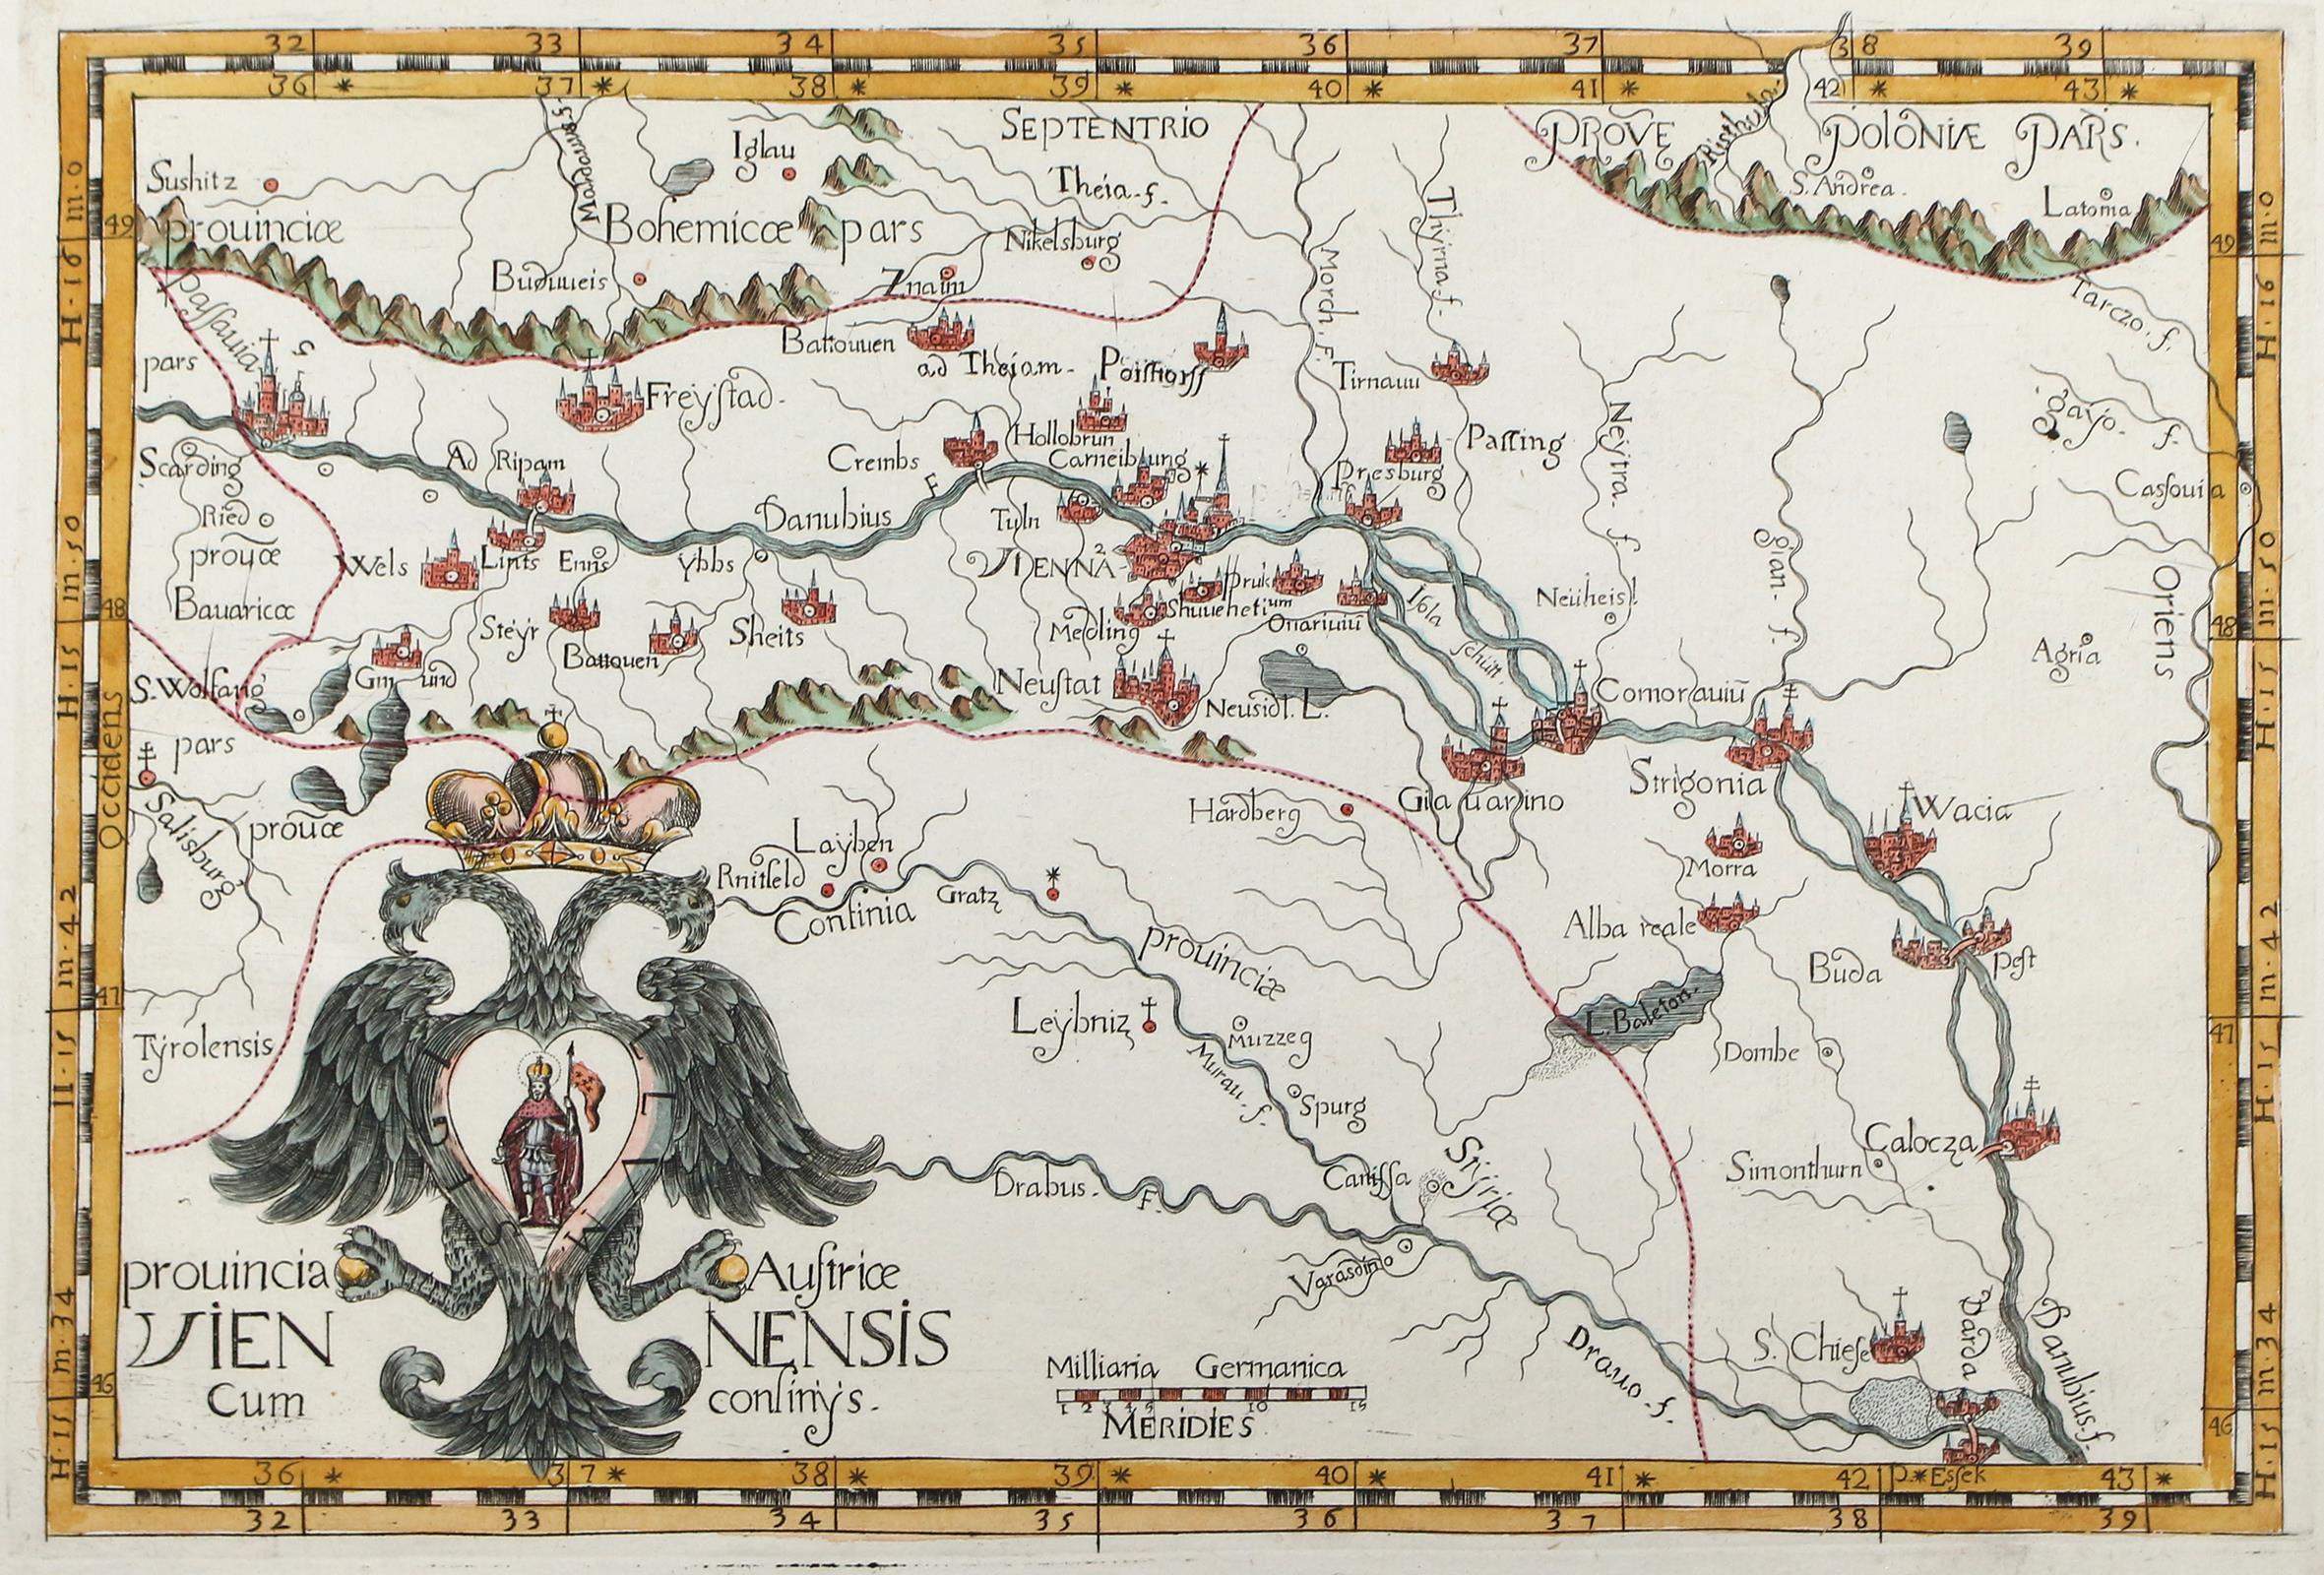 Provincia Austrice Viennensis Cum Confinys. | Bild Nr.1